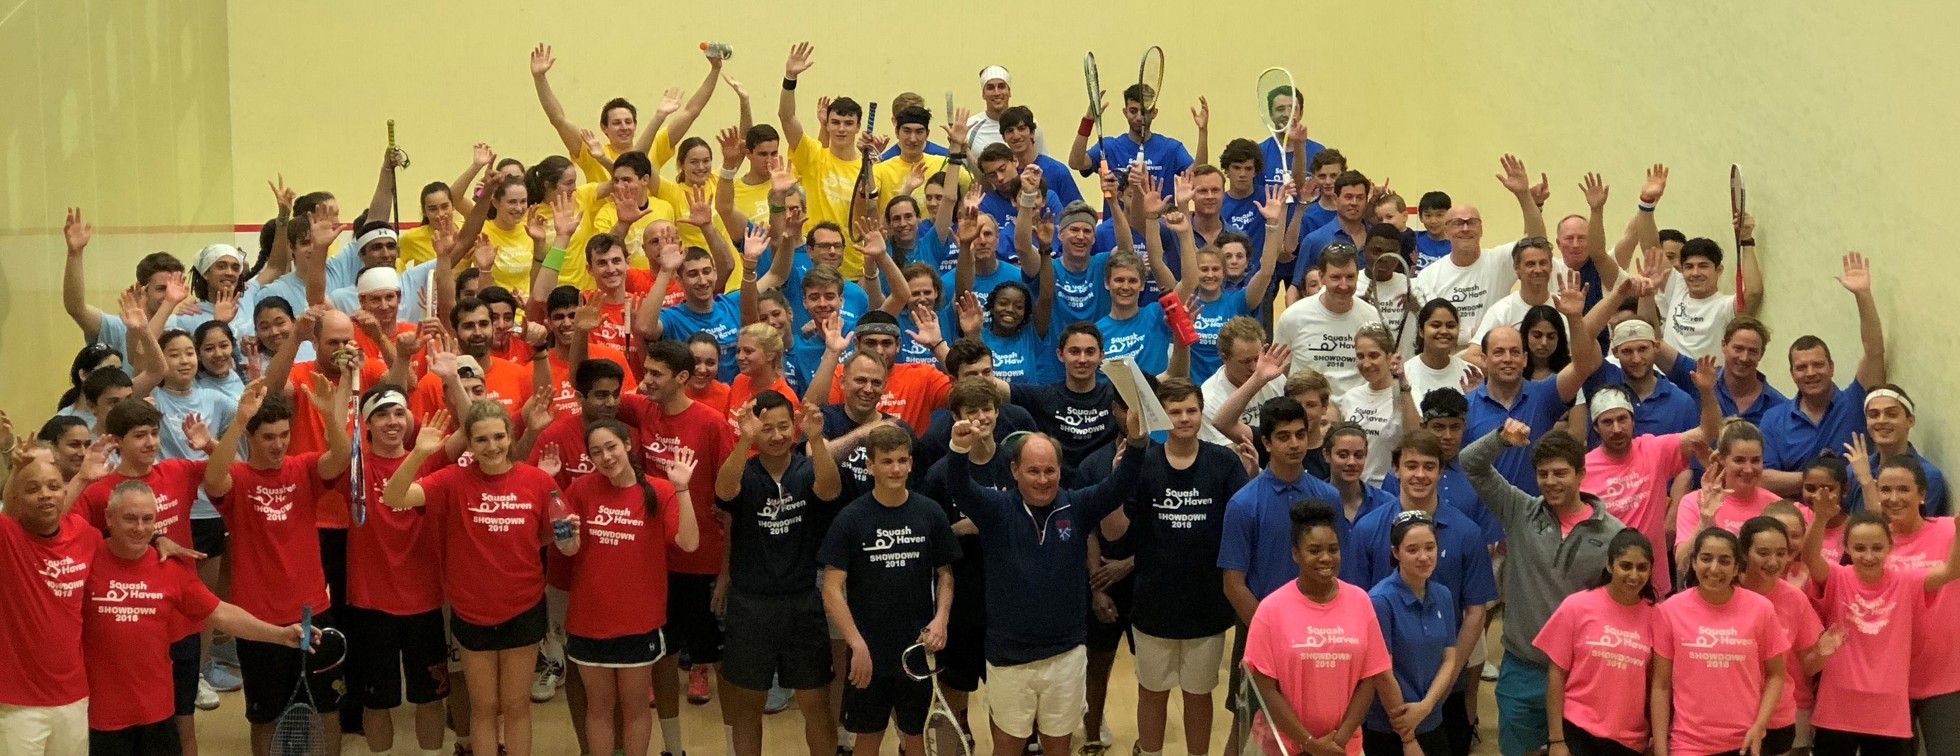 Squash Haven Showdown 2019